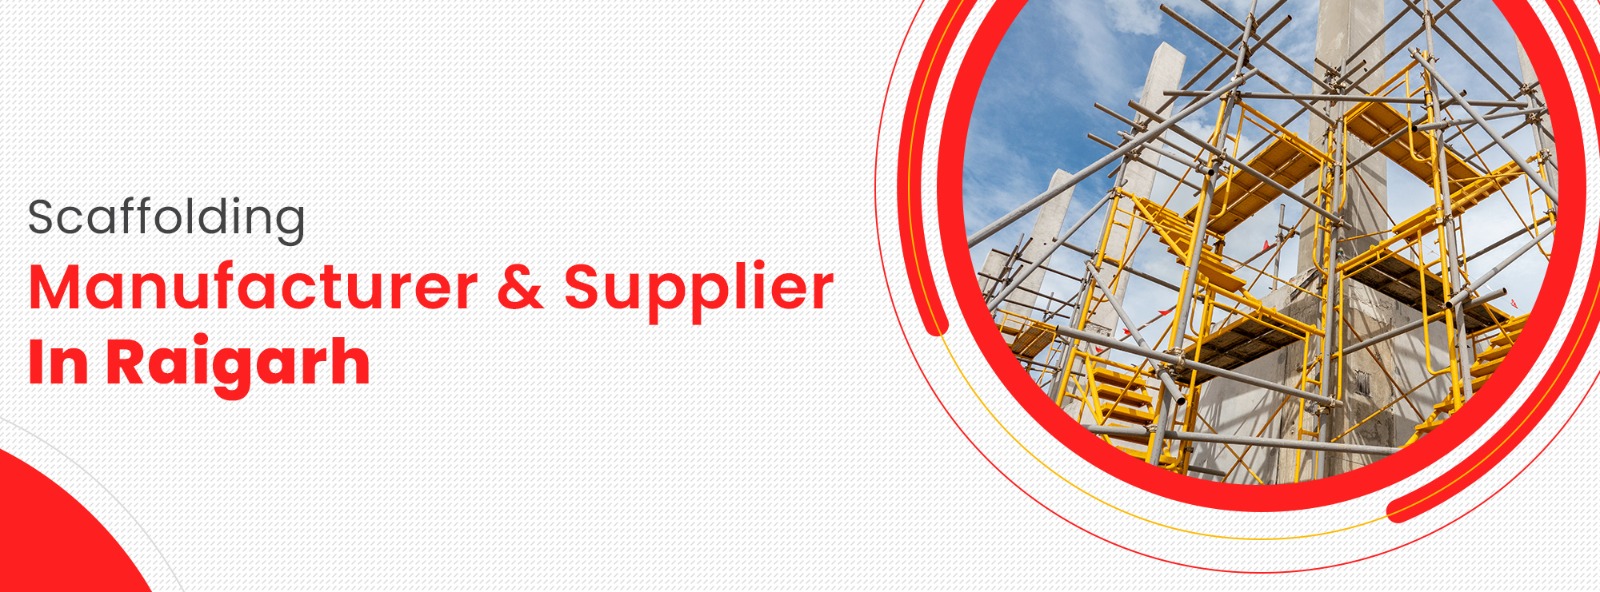 Scaffolding Manufacturer & Supplier In Raigarh